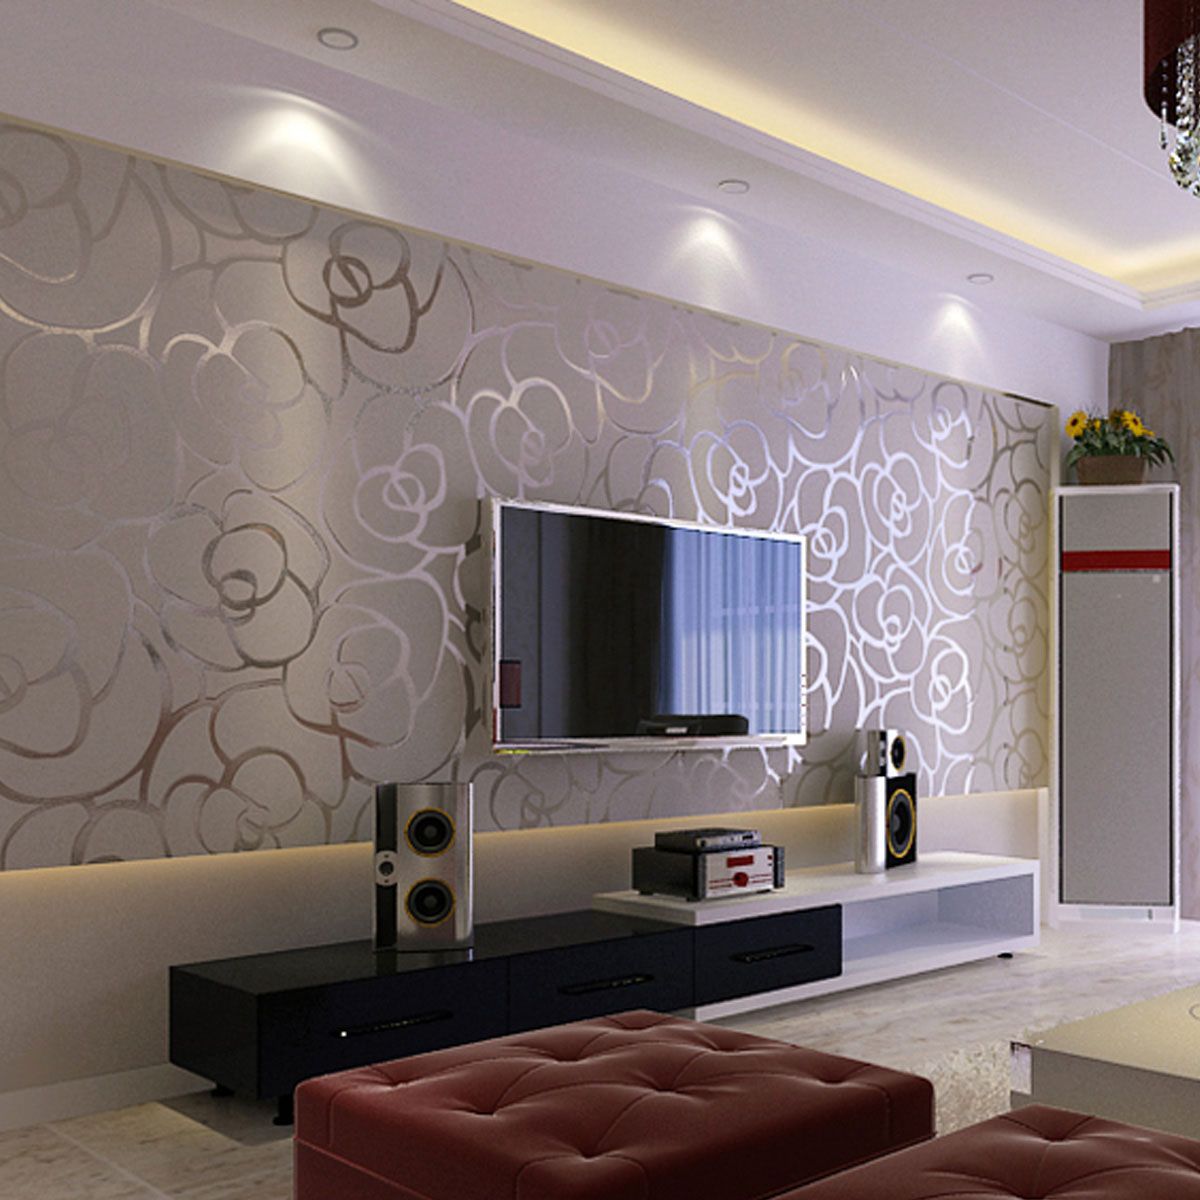 wallpaper dinding,living room,interior design,room,wall,wallpaper